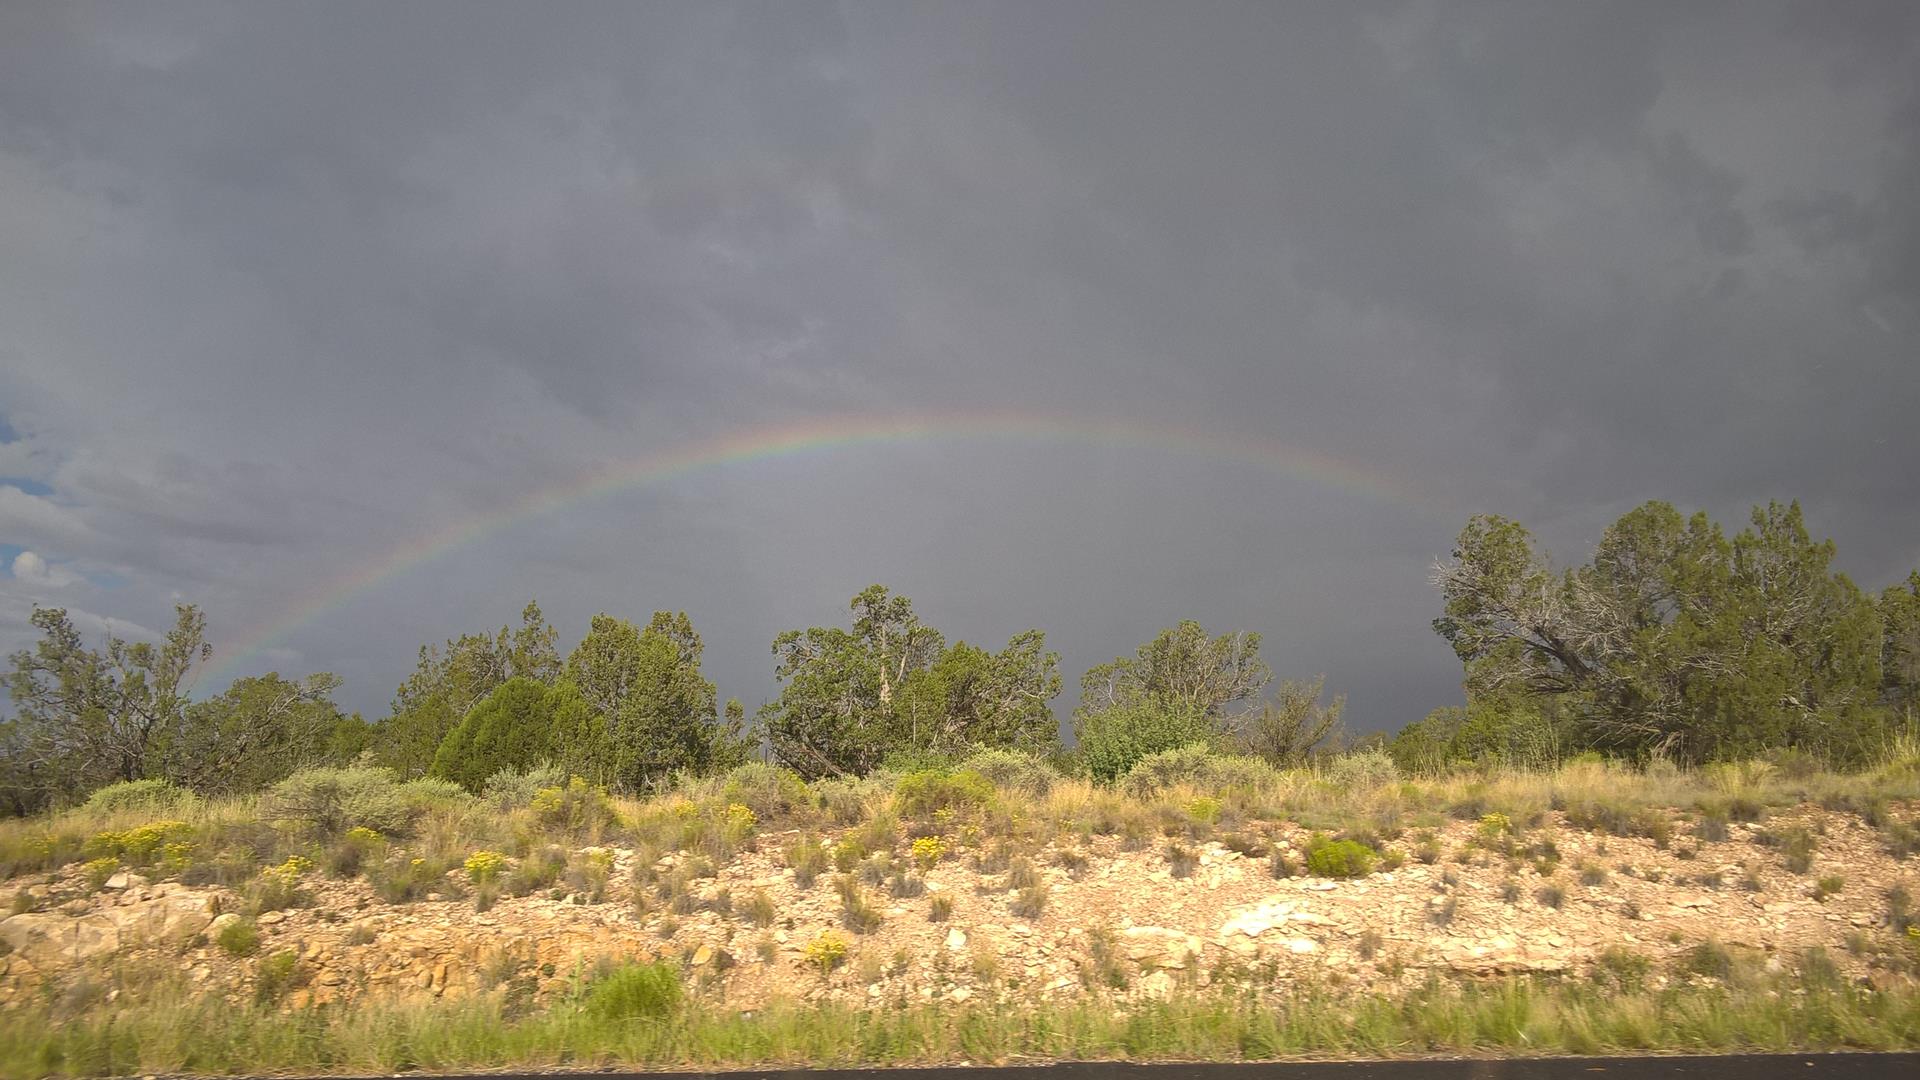 Auf dem Weg von Flagstaff zum Grand Canyon wurden wir von einem Regenbogen begleitet. Moment, das bedeutet Regen, oder?